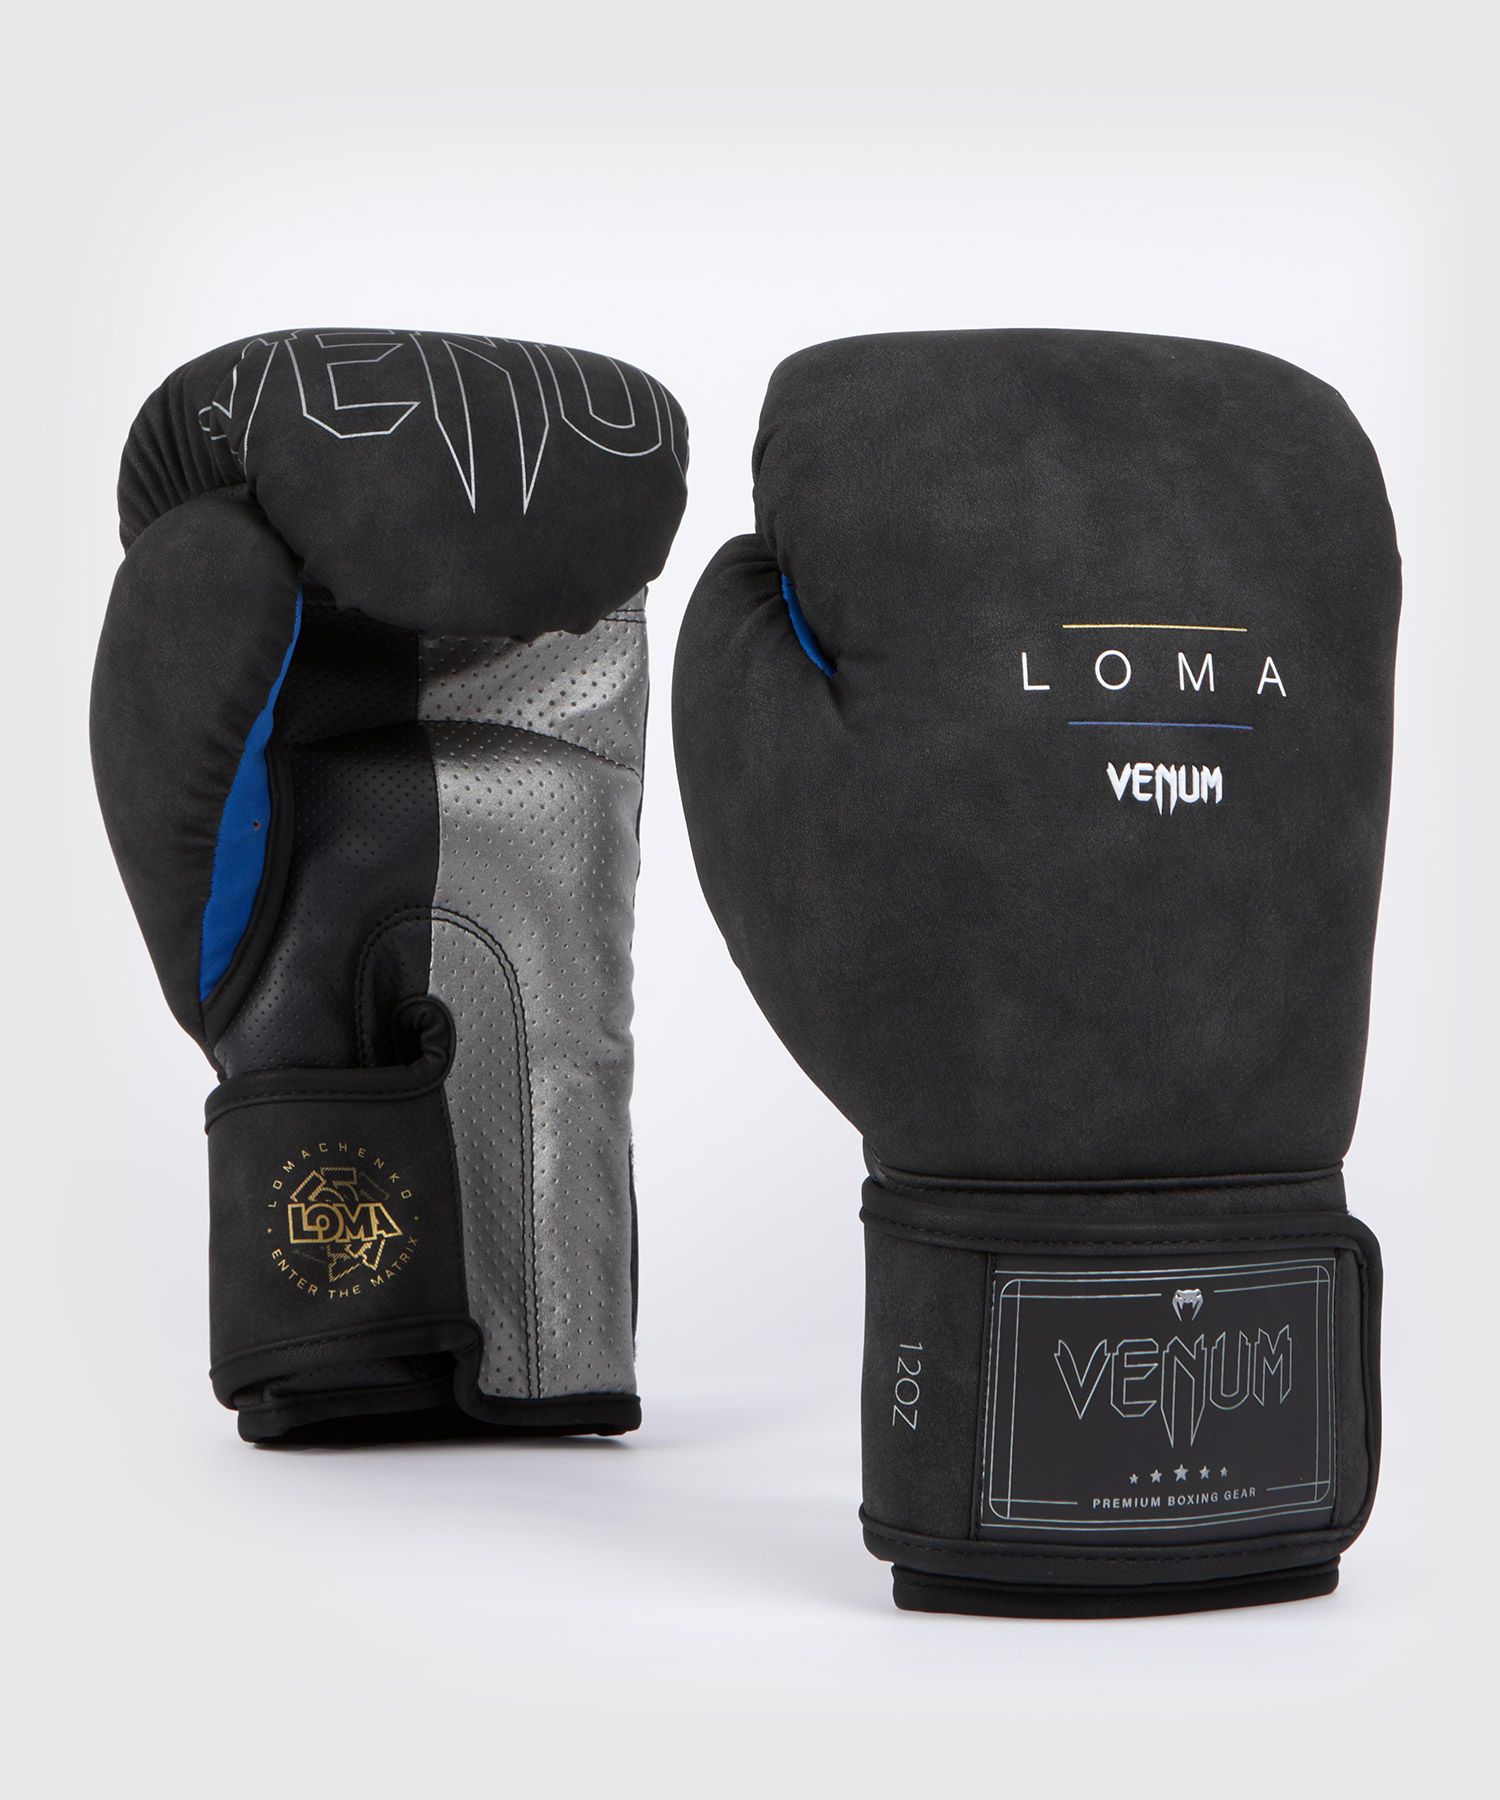 Venum Loma Classic Boxing Gloves - Black/Blue